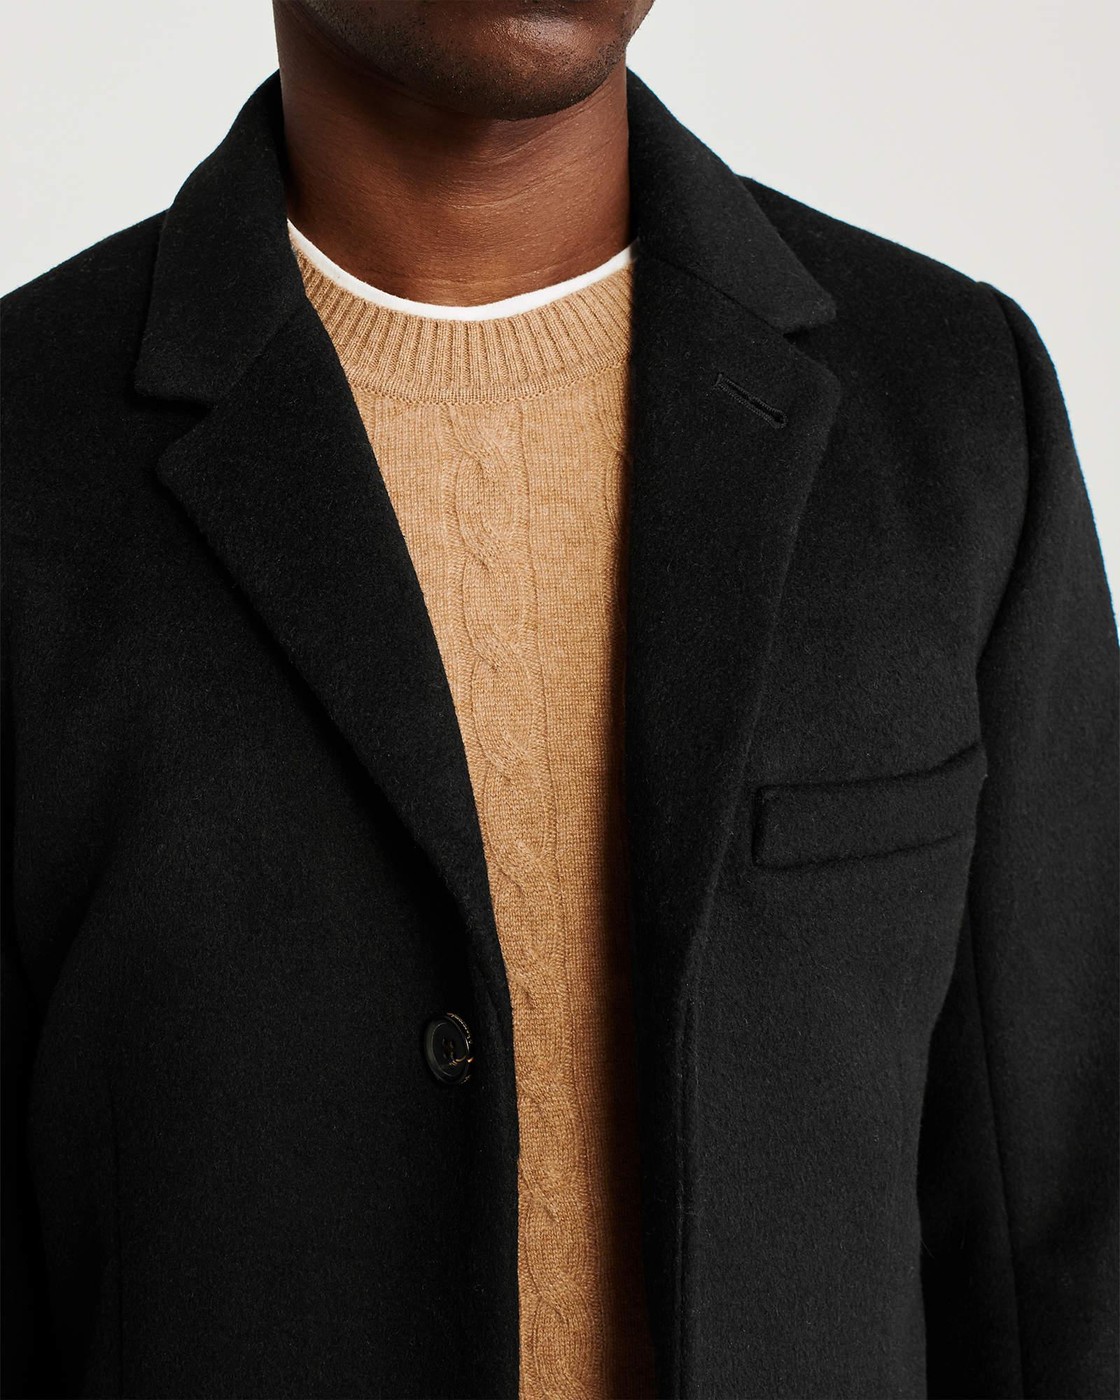 Пальто мужское демисезонное - пальто Abercrombie & Fitch, M, M